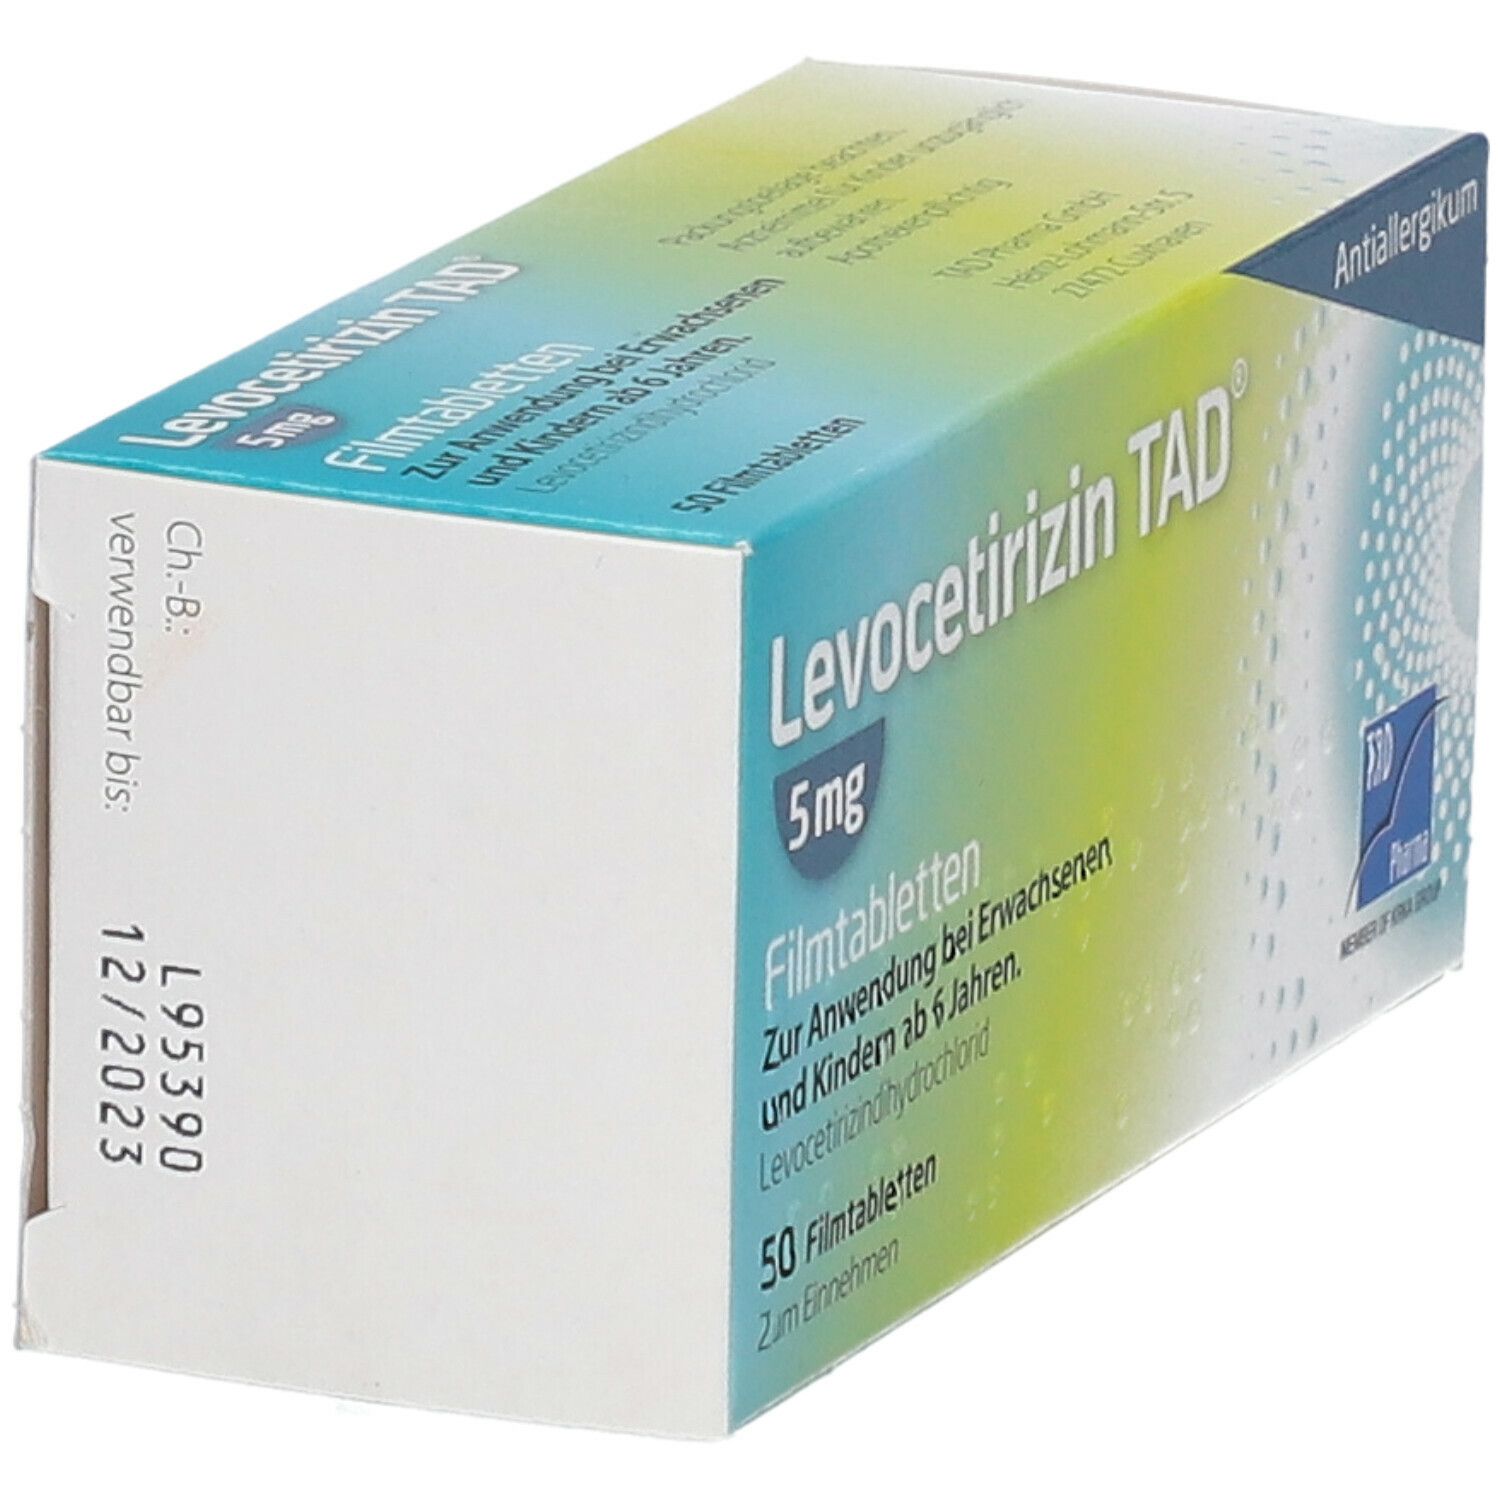 Levocetirizin TAD® 5 mg Filmtabletten